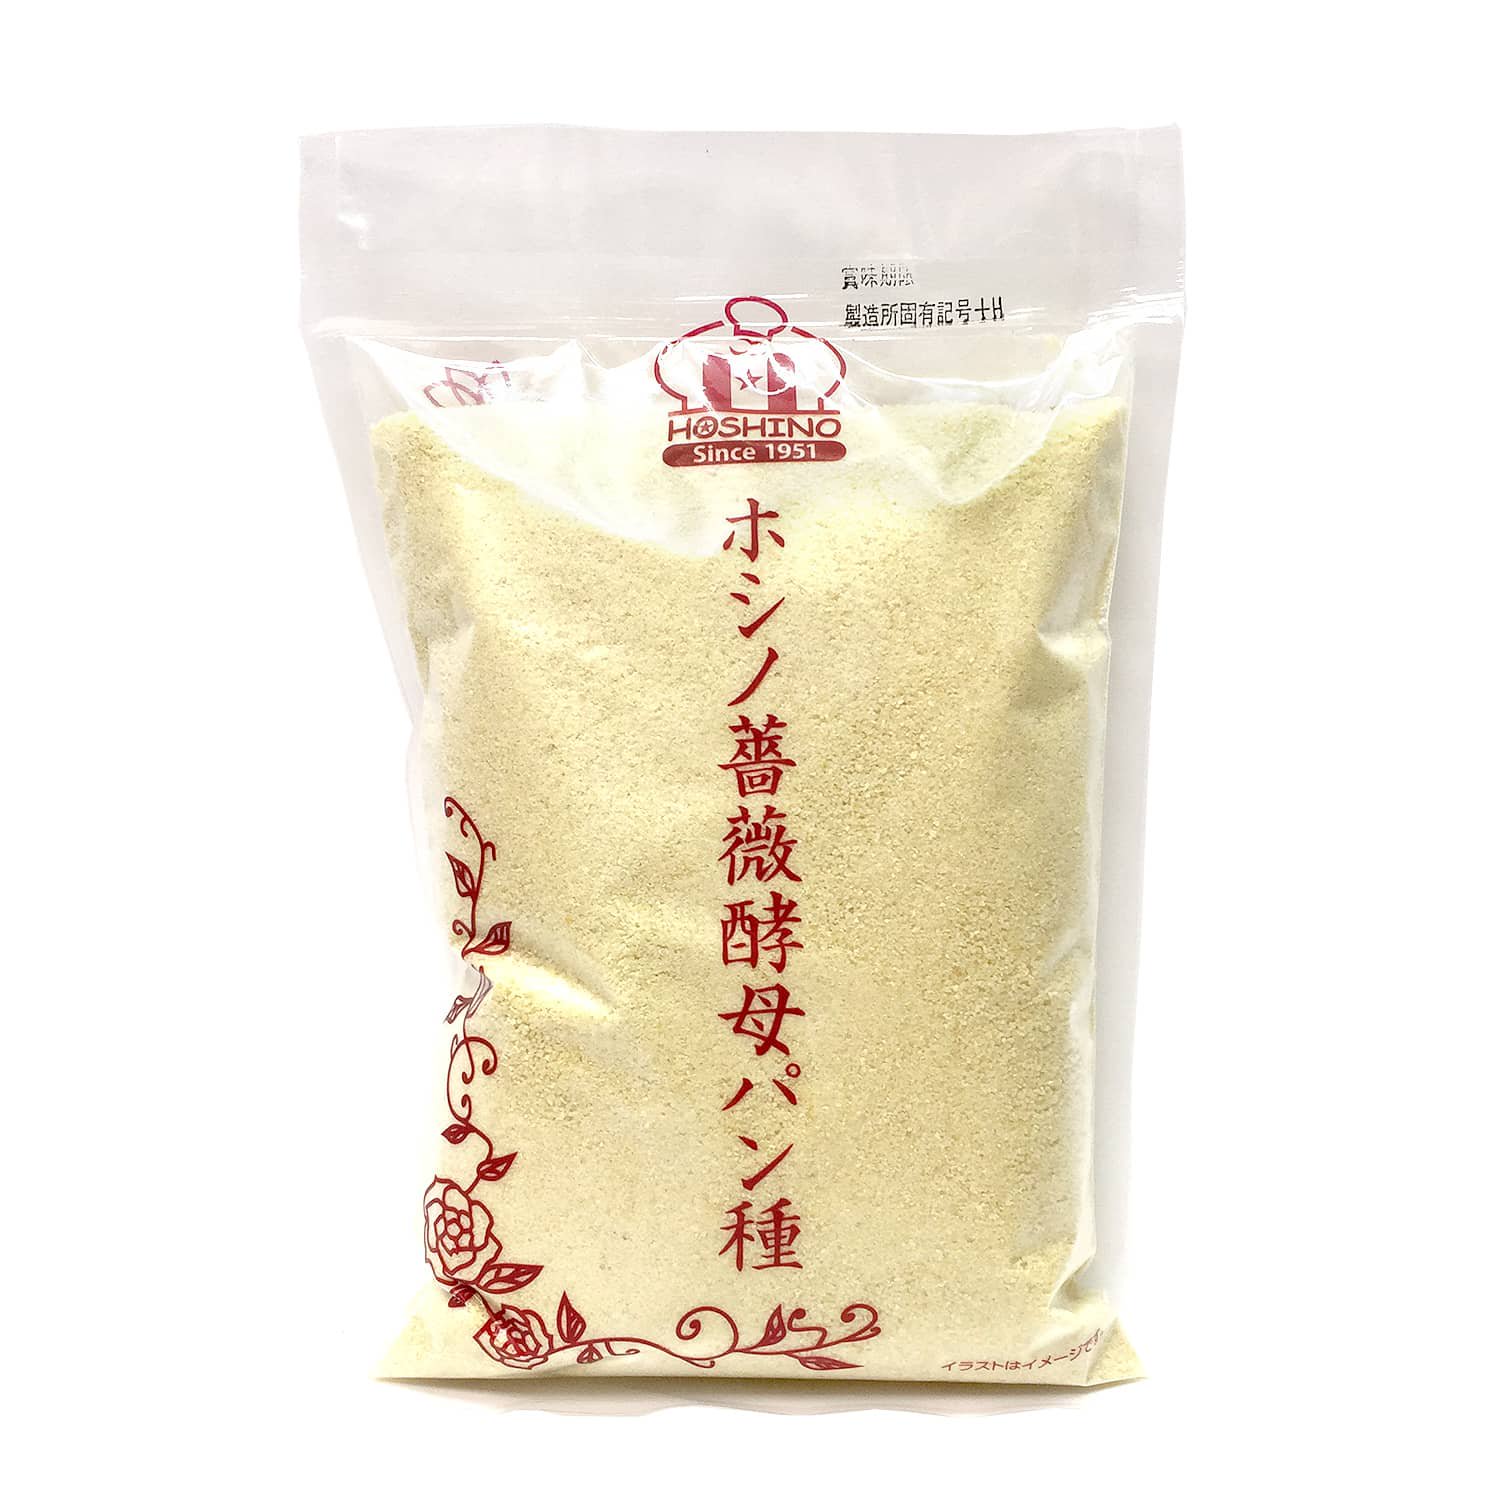 【クール冷蔵】ホシノ薔薇酵母パン種 500g / 福山市産バラ酵母を活用した「薔薇酵母パン種」